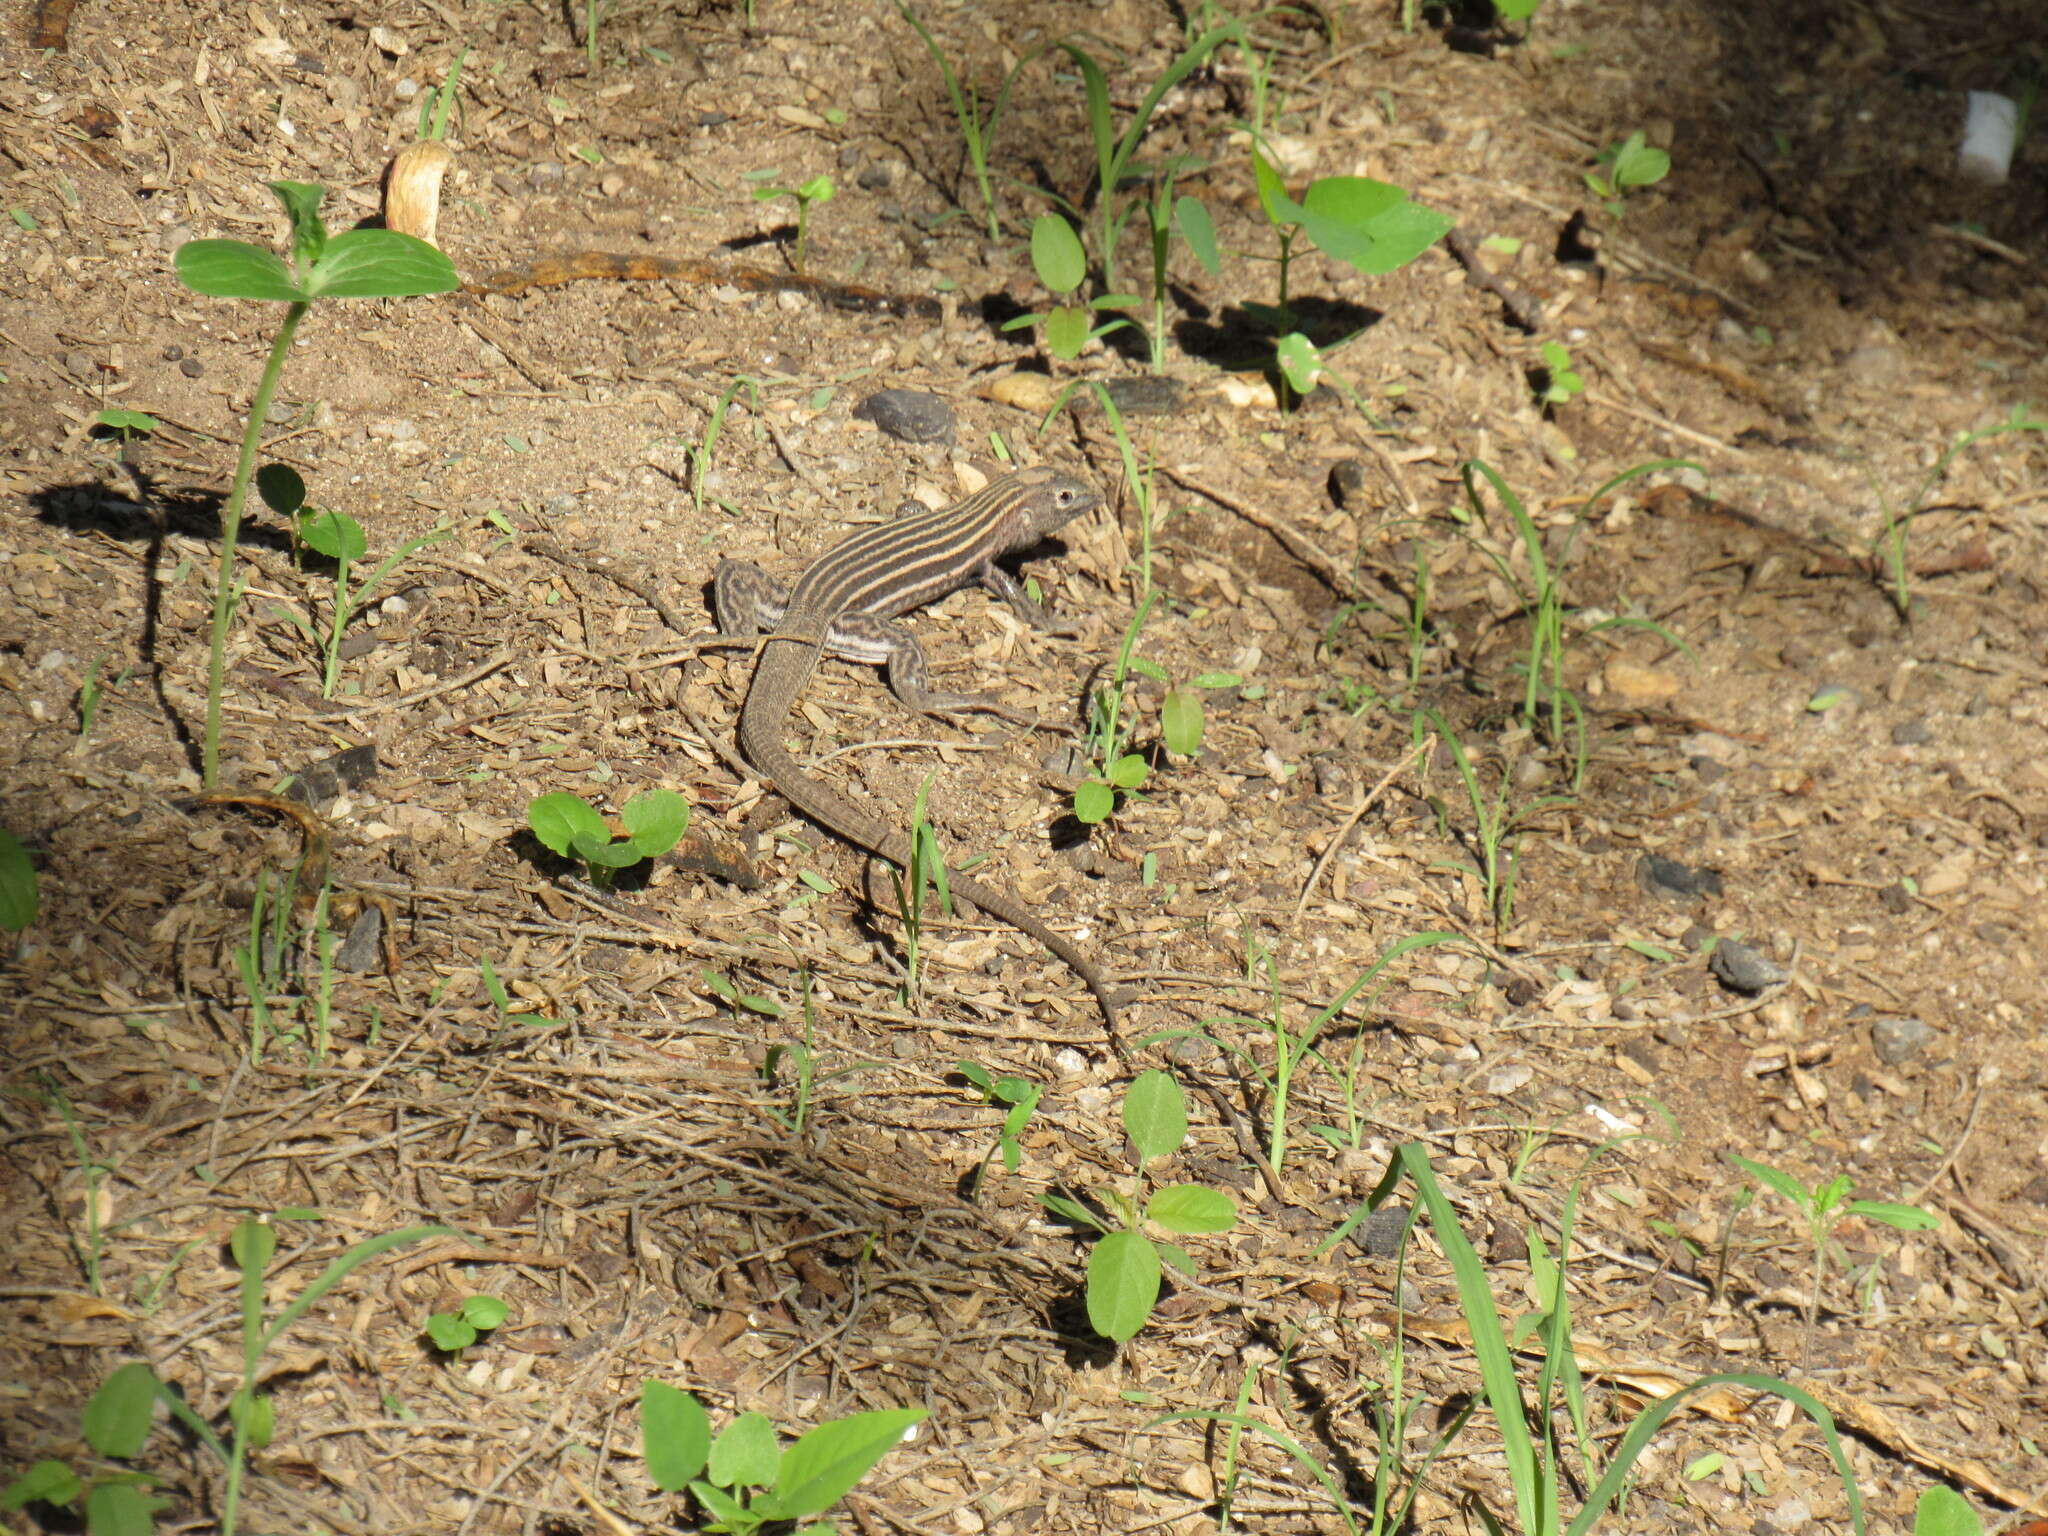 Image of San Pedro Nolasco whiptail